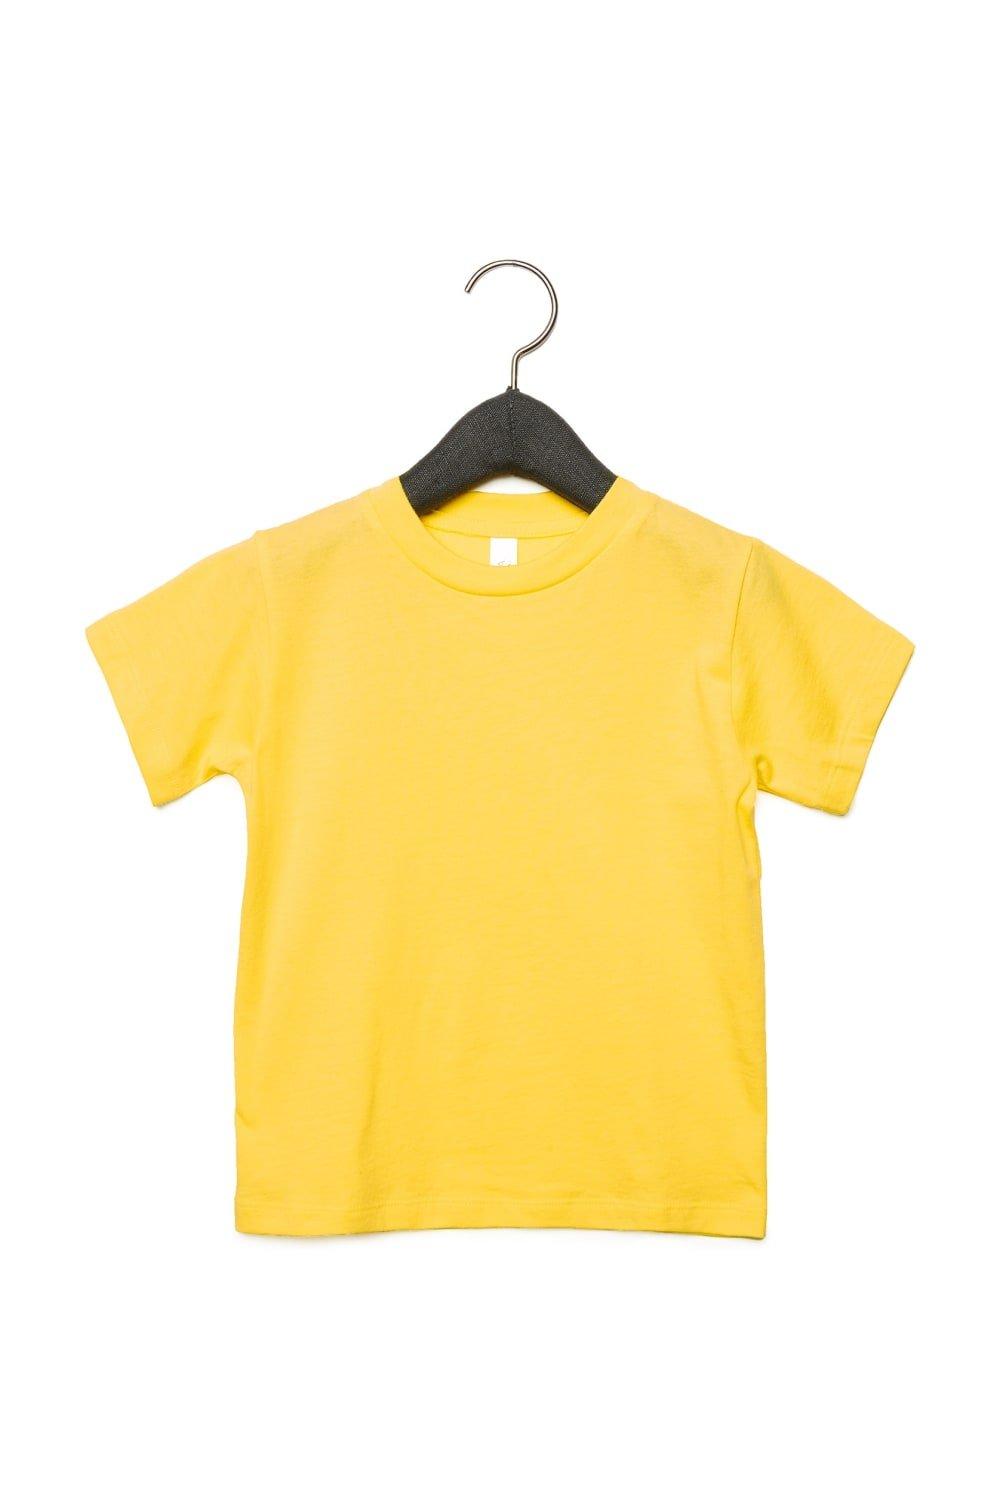 Футболка из джерси с коротким рукавом Bella + Canvas, желтый футболка из джерси с коротким рукавом bella canvas черный